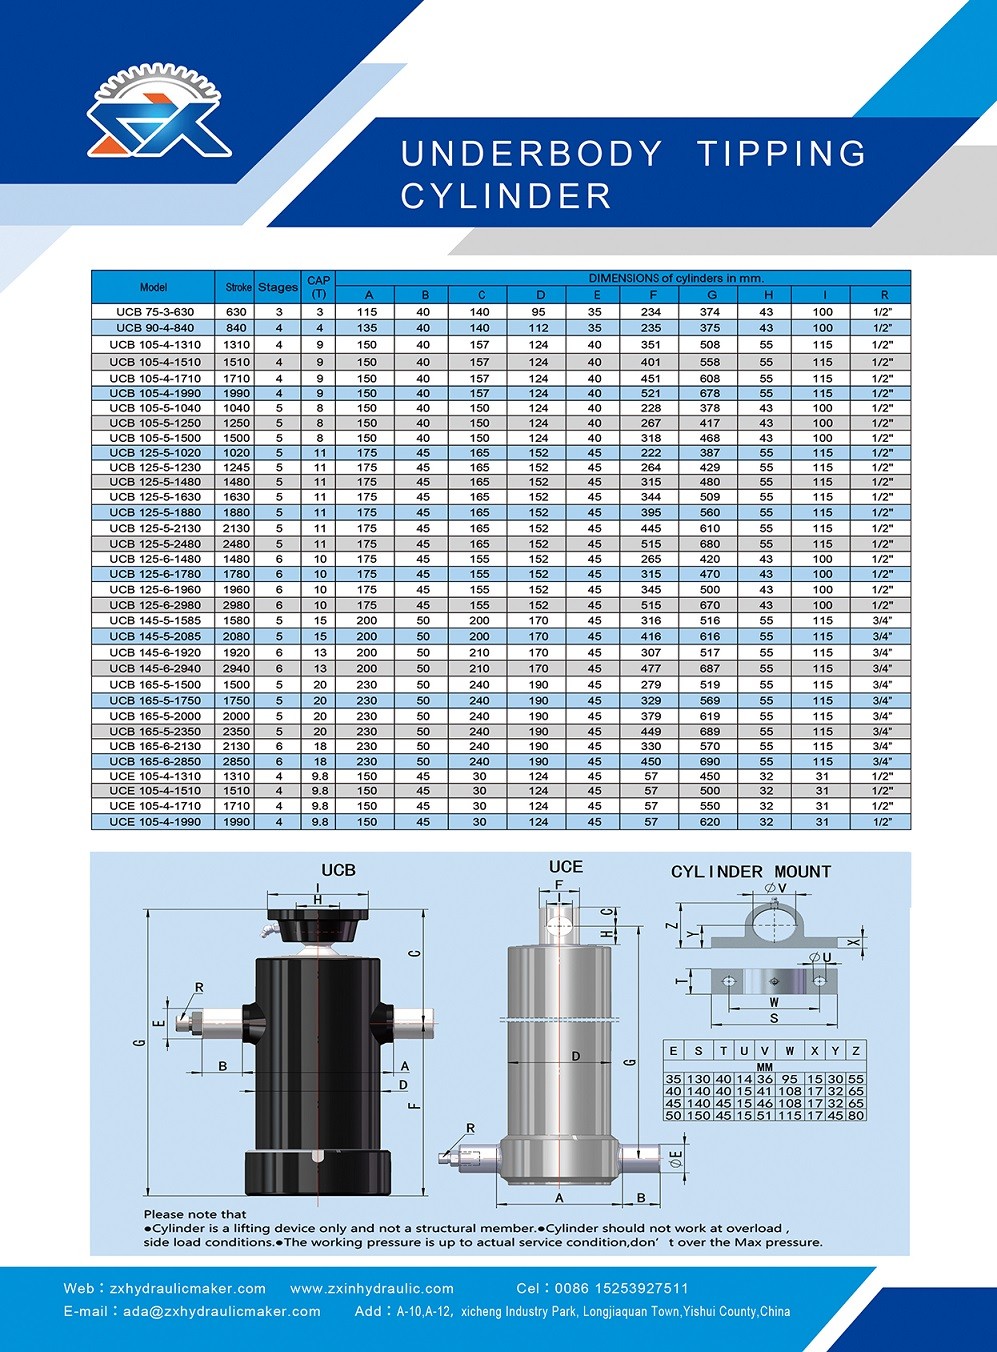 Underbody Hydraulic Cylinders